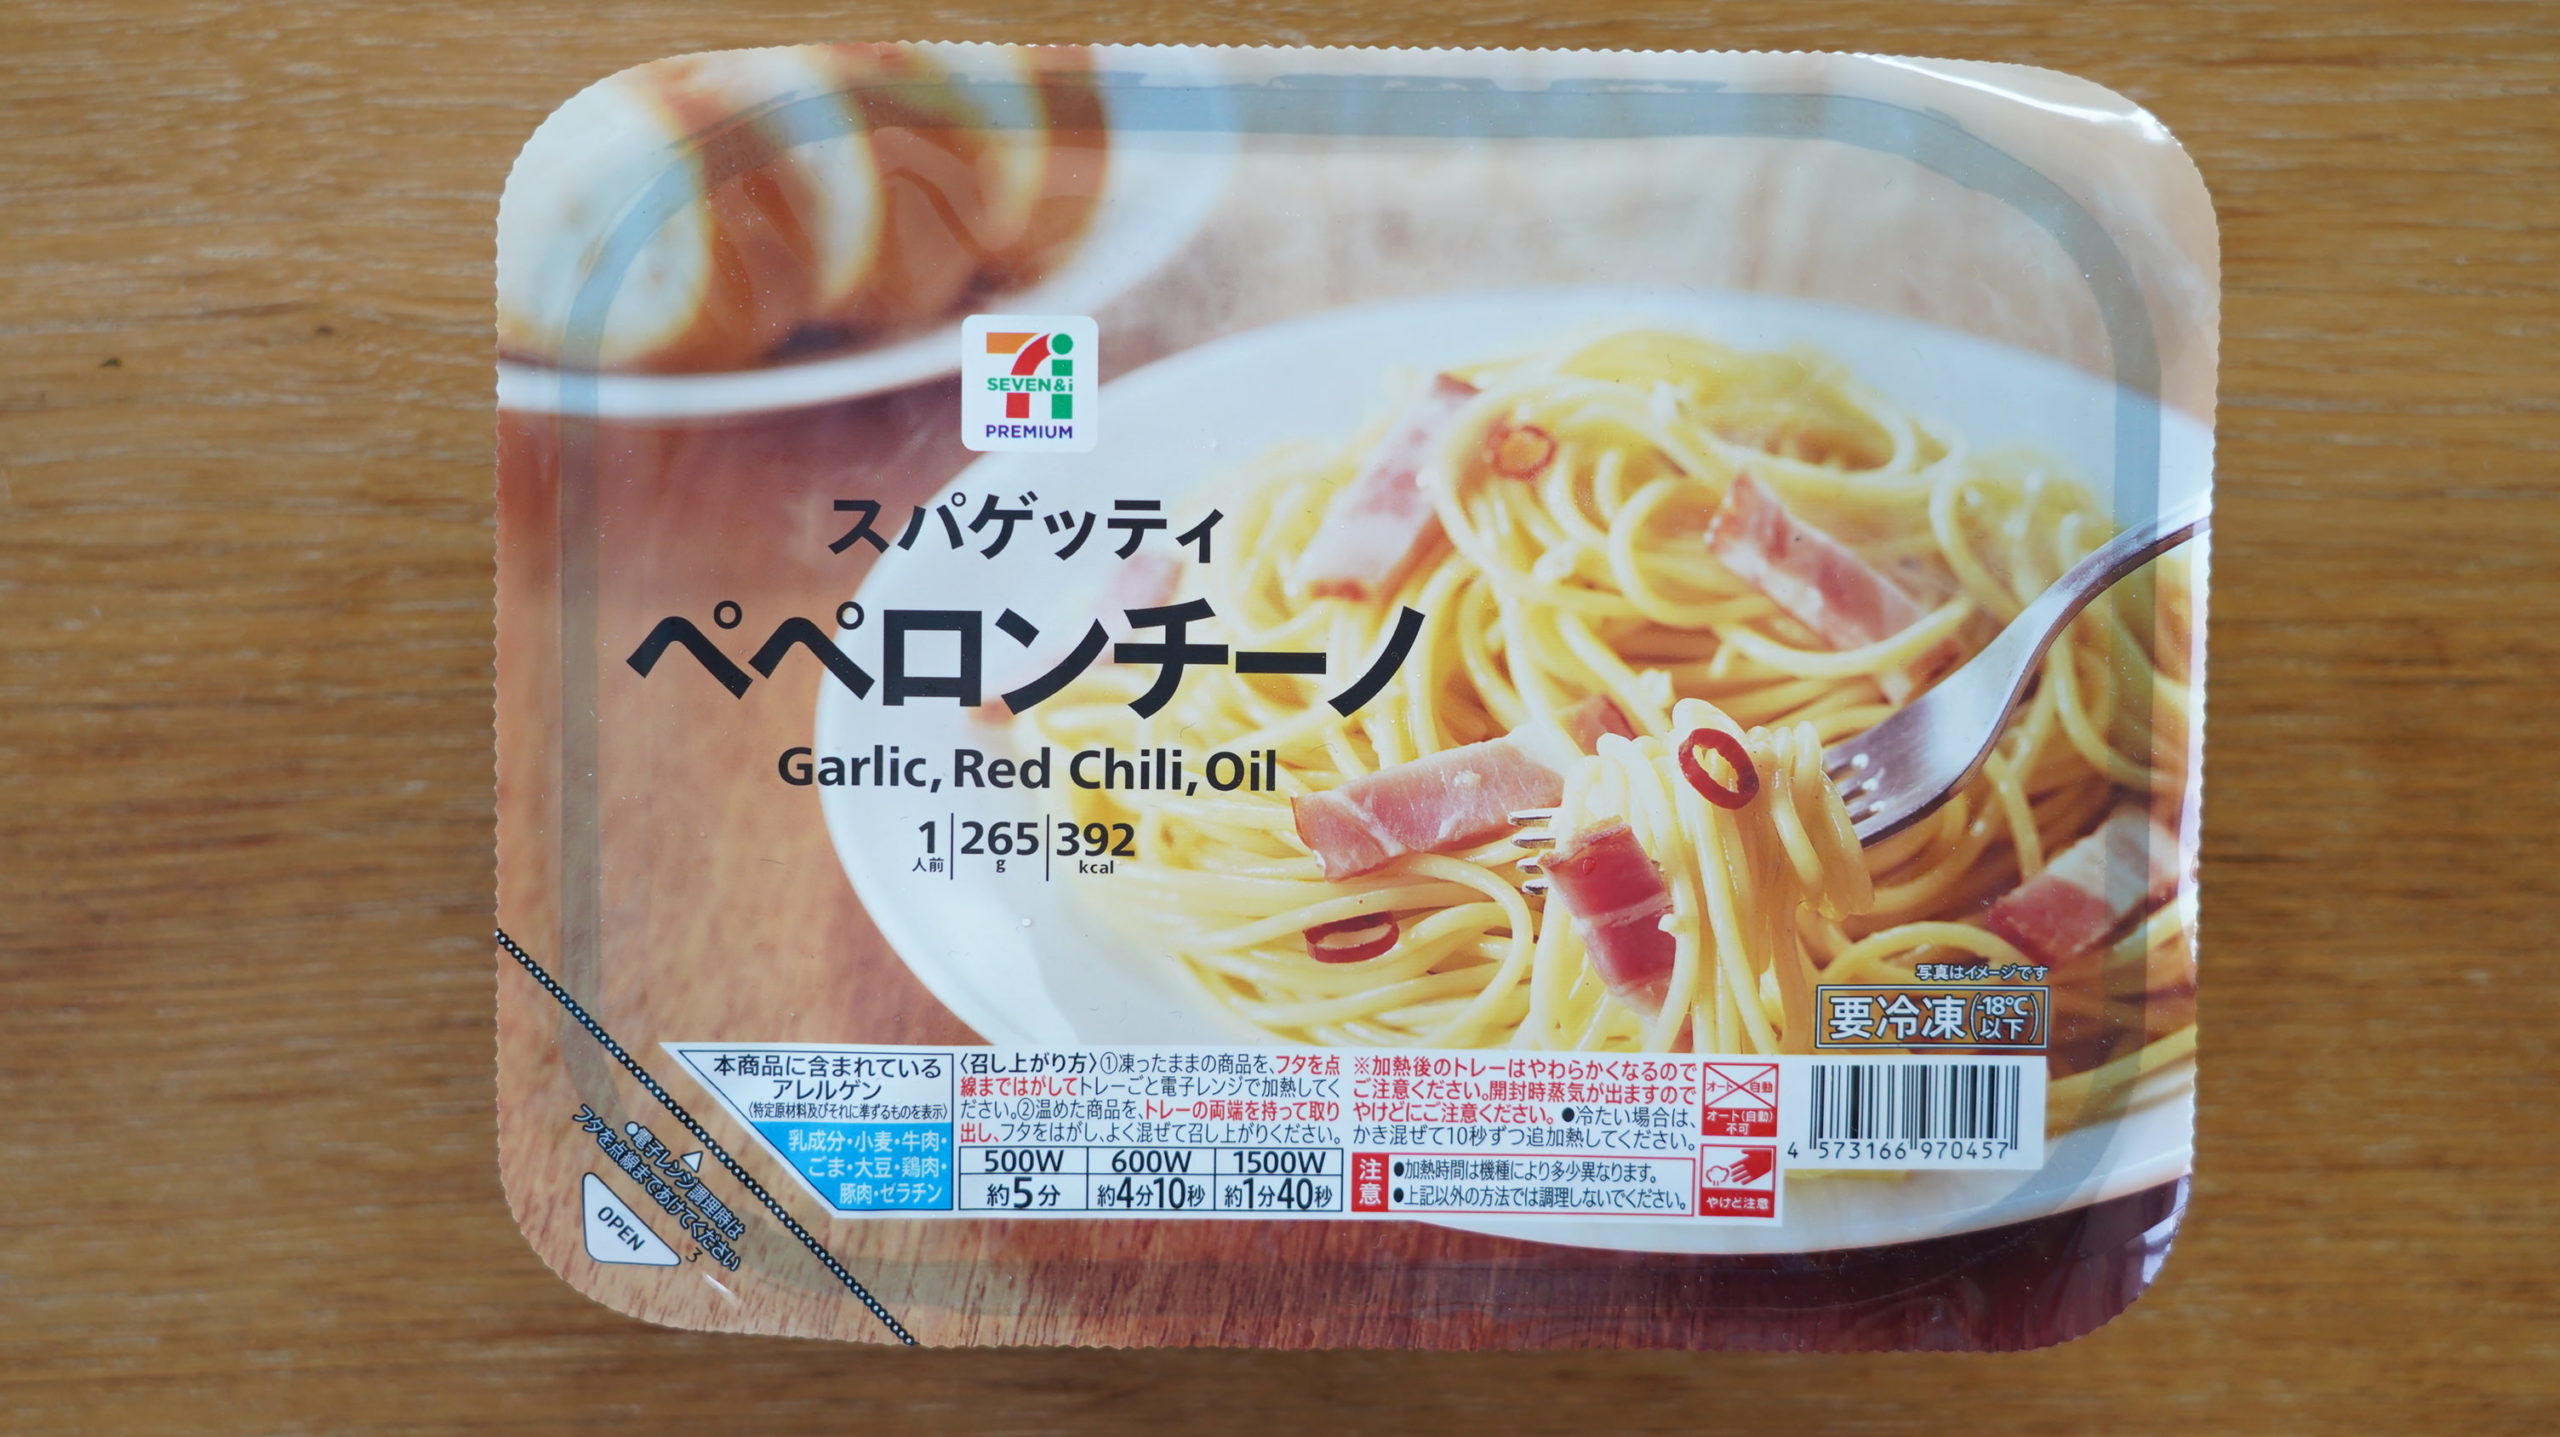 セブンイレブンのおすすめ冷凍食品「スパゲッティペペロンチーノ」のパッケージ写真